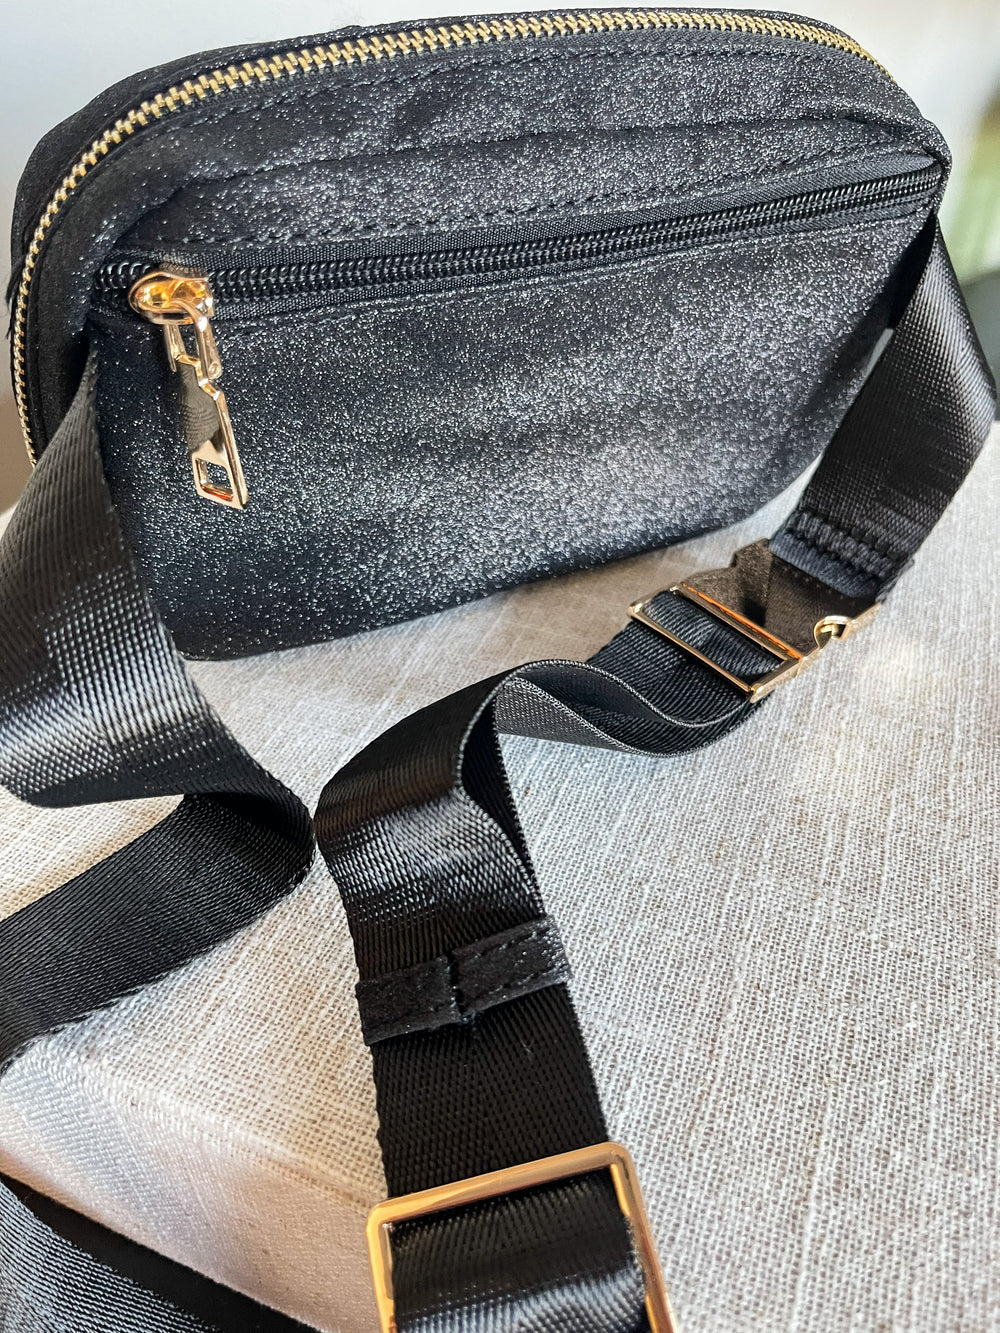 Black Sparkly Belt Bag | Black Sparkly Sling Bag